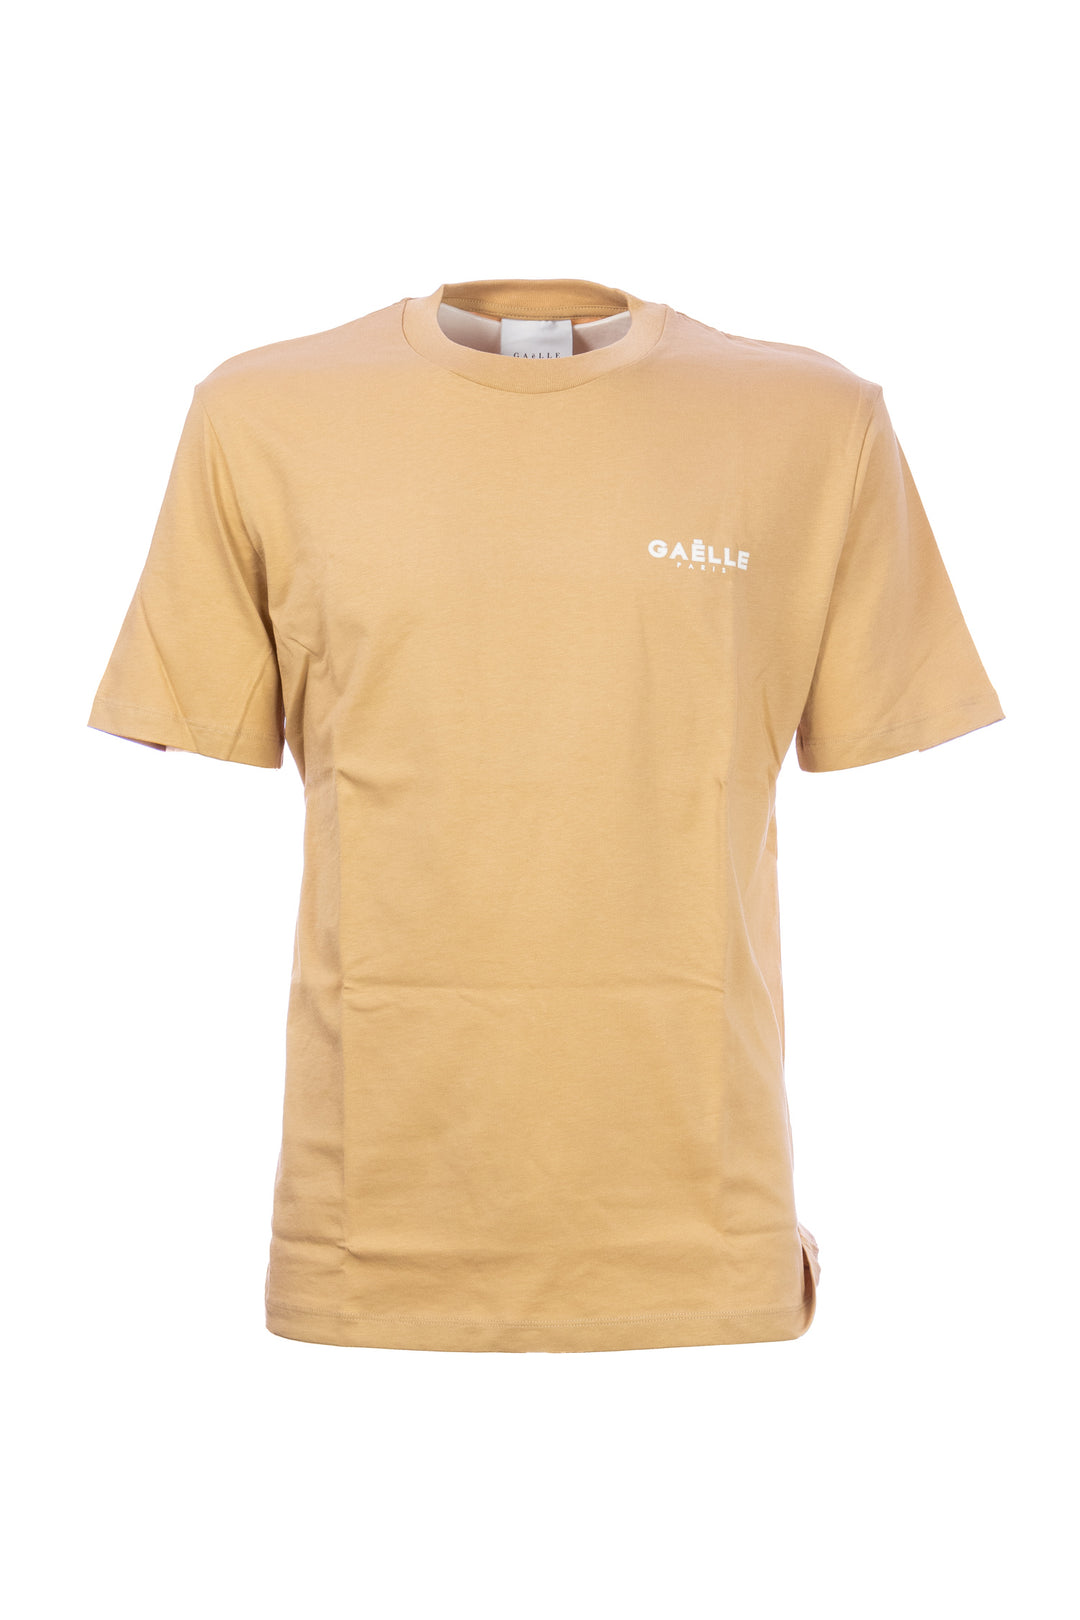 GAELLE T-shirt beige in cotone con logo stampato - Mancinelli 1954